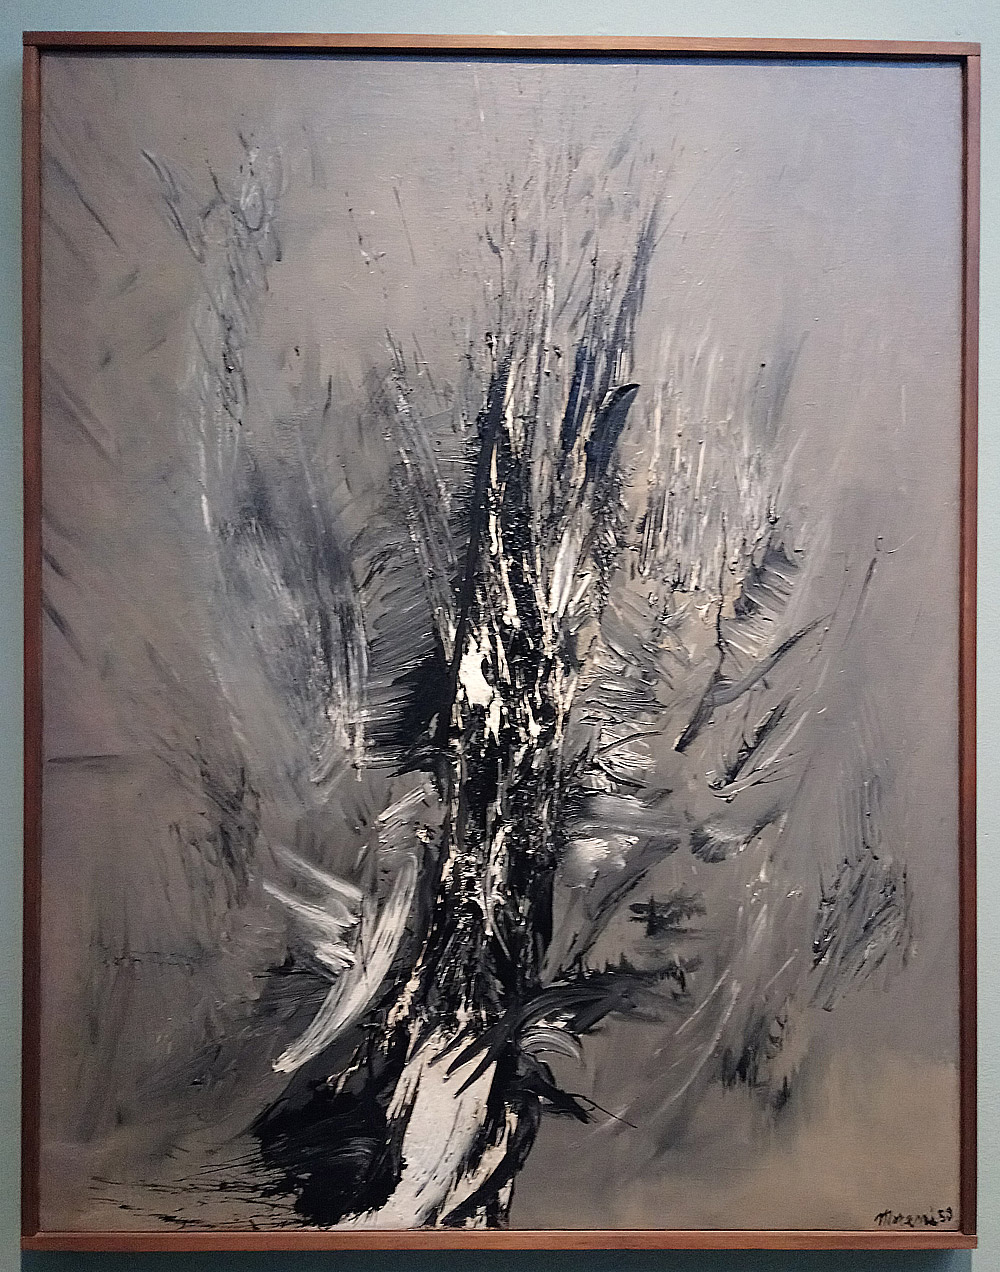 Mattia Moreni, Sole e rovo (1956; olio su tela, 170 x 100 cm; Collezione privata)
 